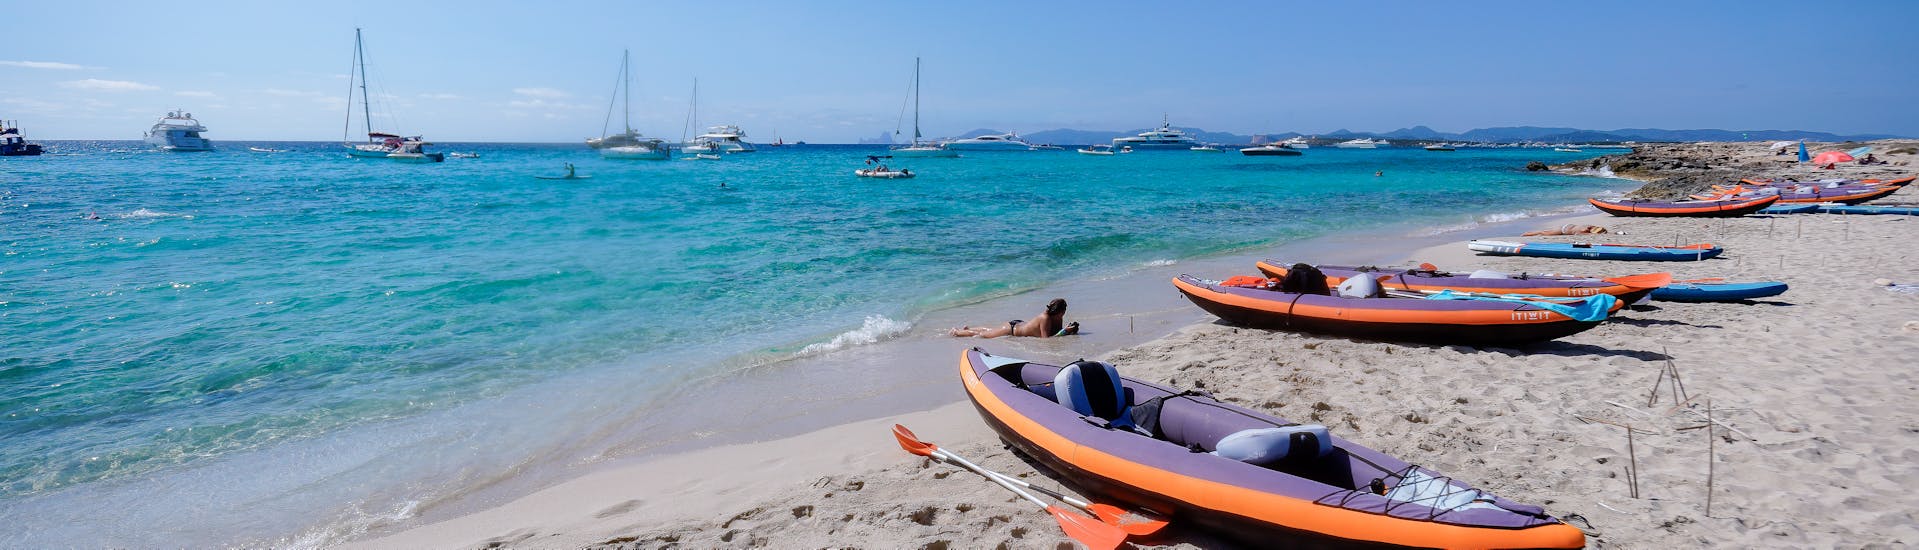 All-Inclusive-Bootstour ab Ibiza mit Zwischenstopp in Formentera.